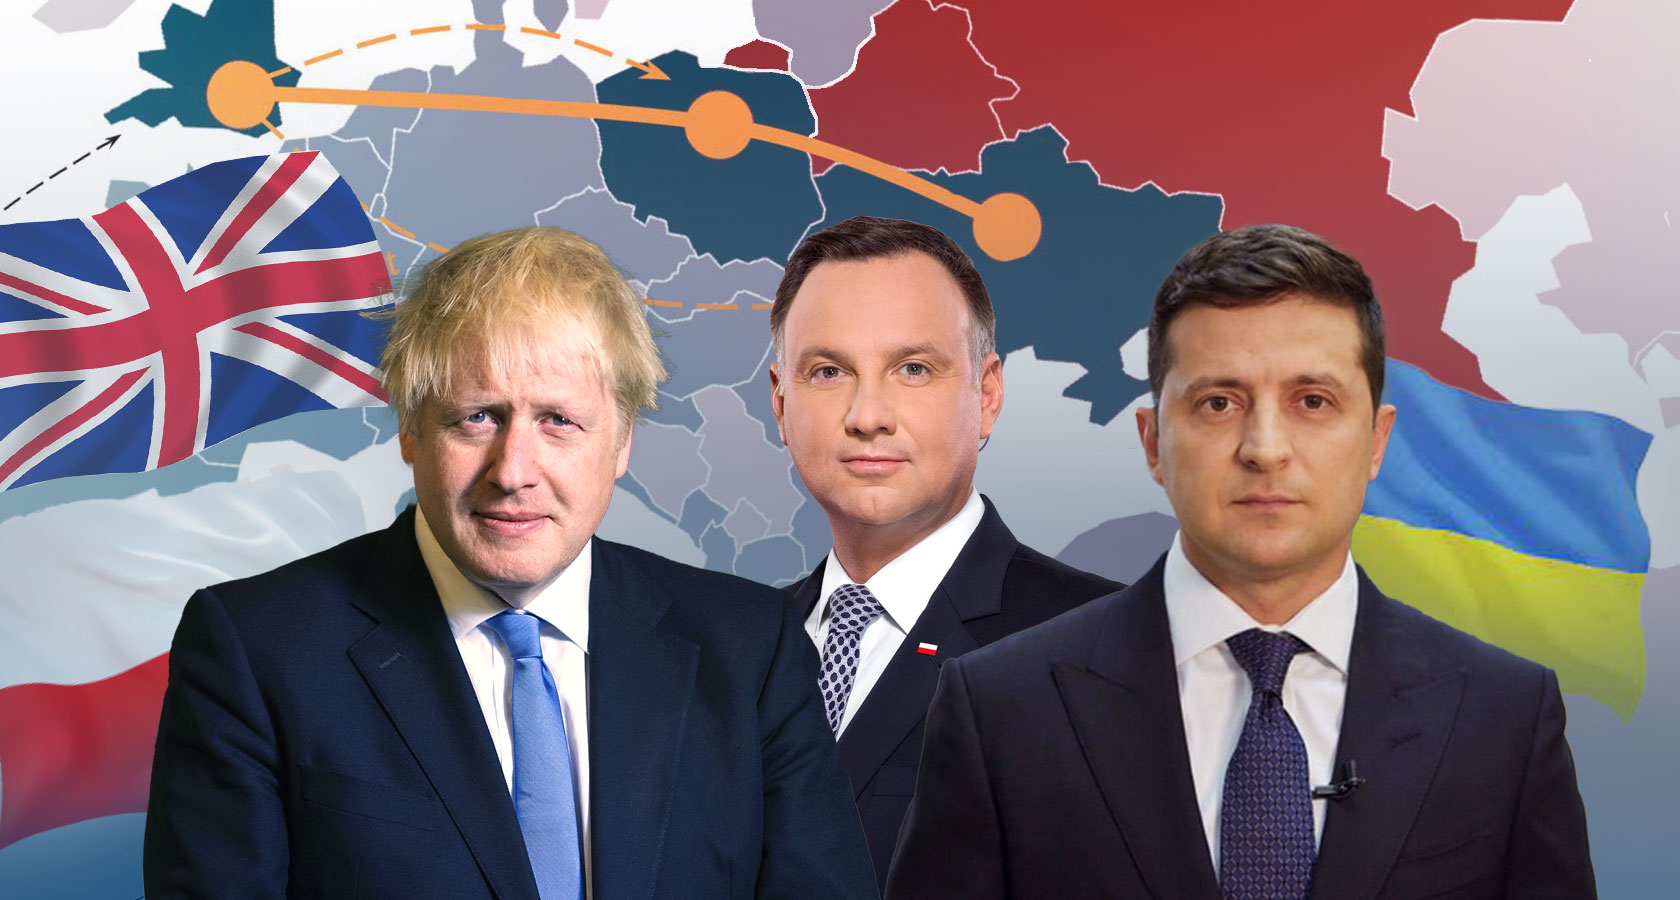 Альянс Украина-Польша-Британия, скандал с Трухиным и обещание GTA 6: новости недели